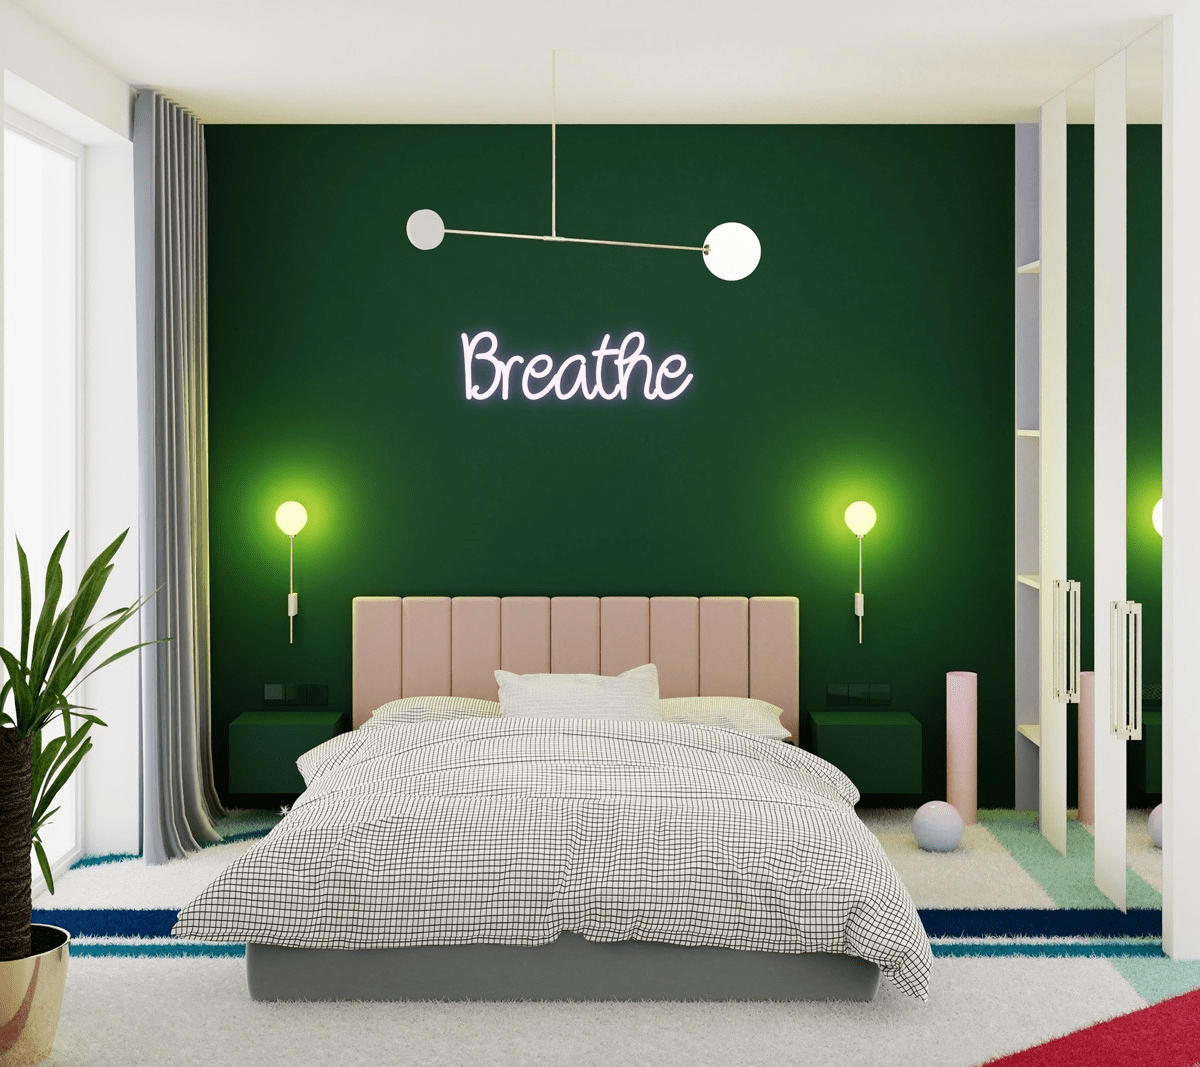 Ý tưởng trang trí phòng ngủ màu xanh đẹp mắt và ấn tượng 2021